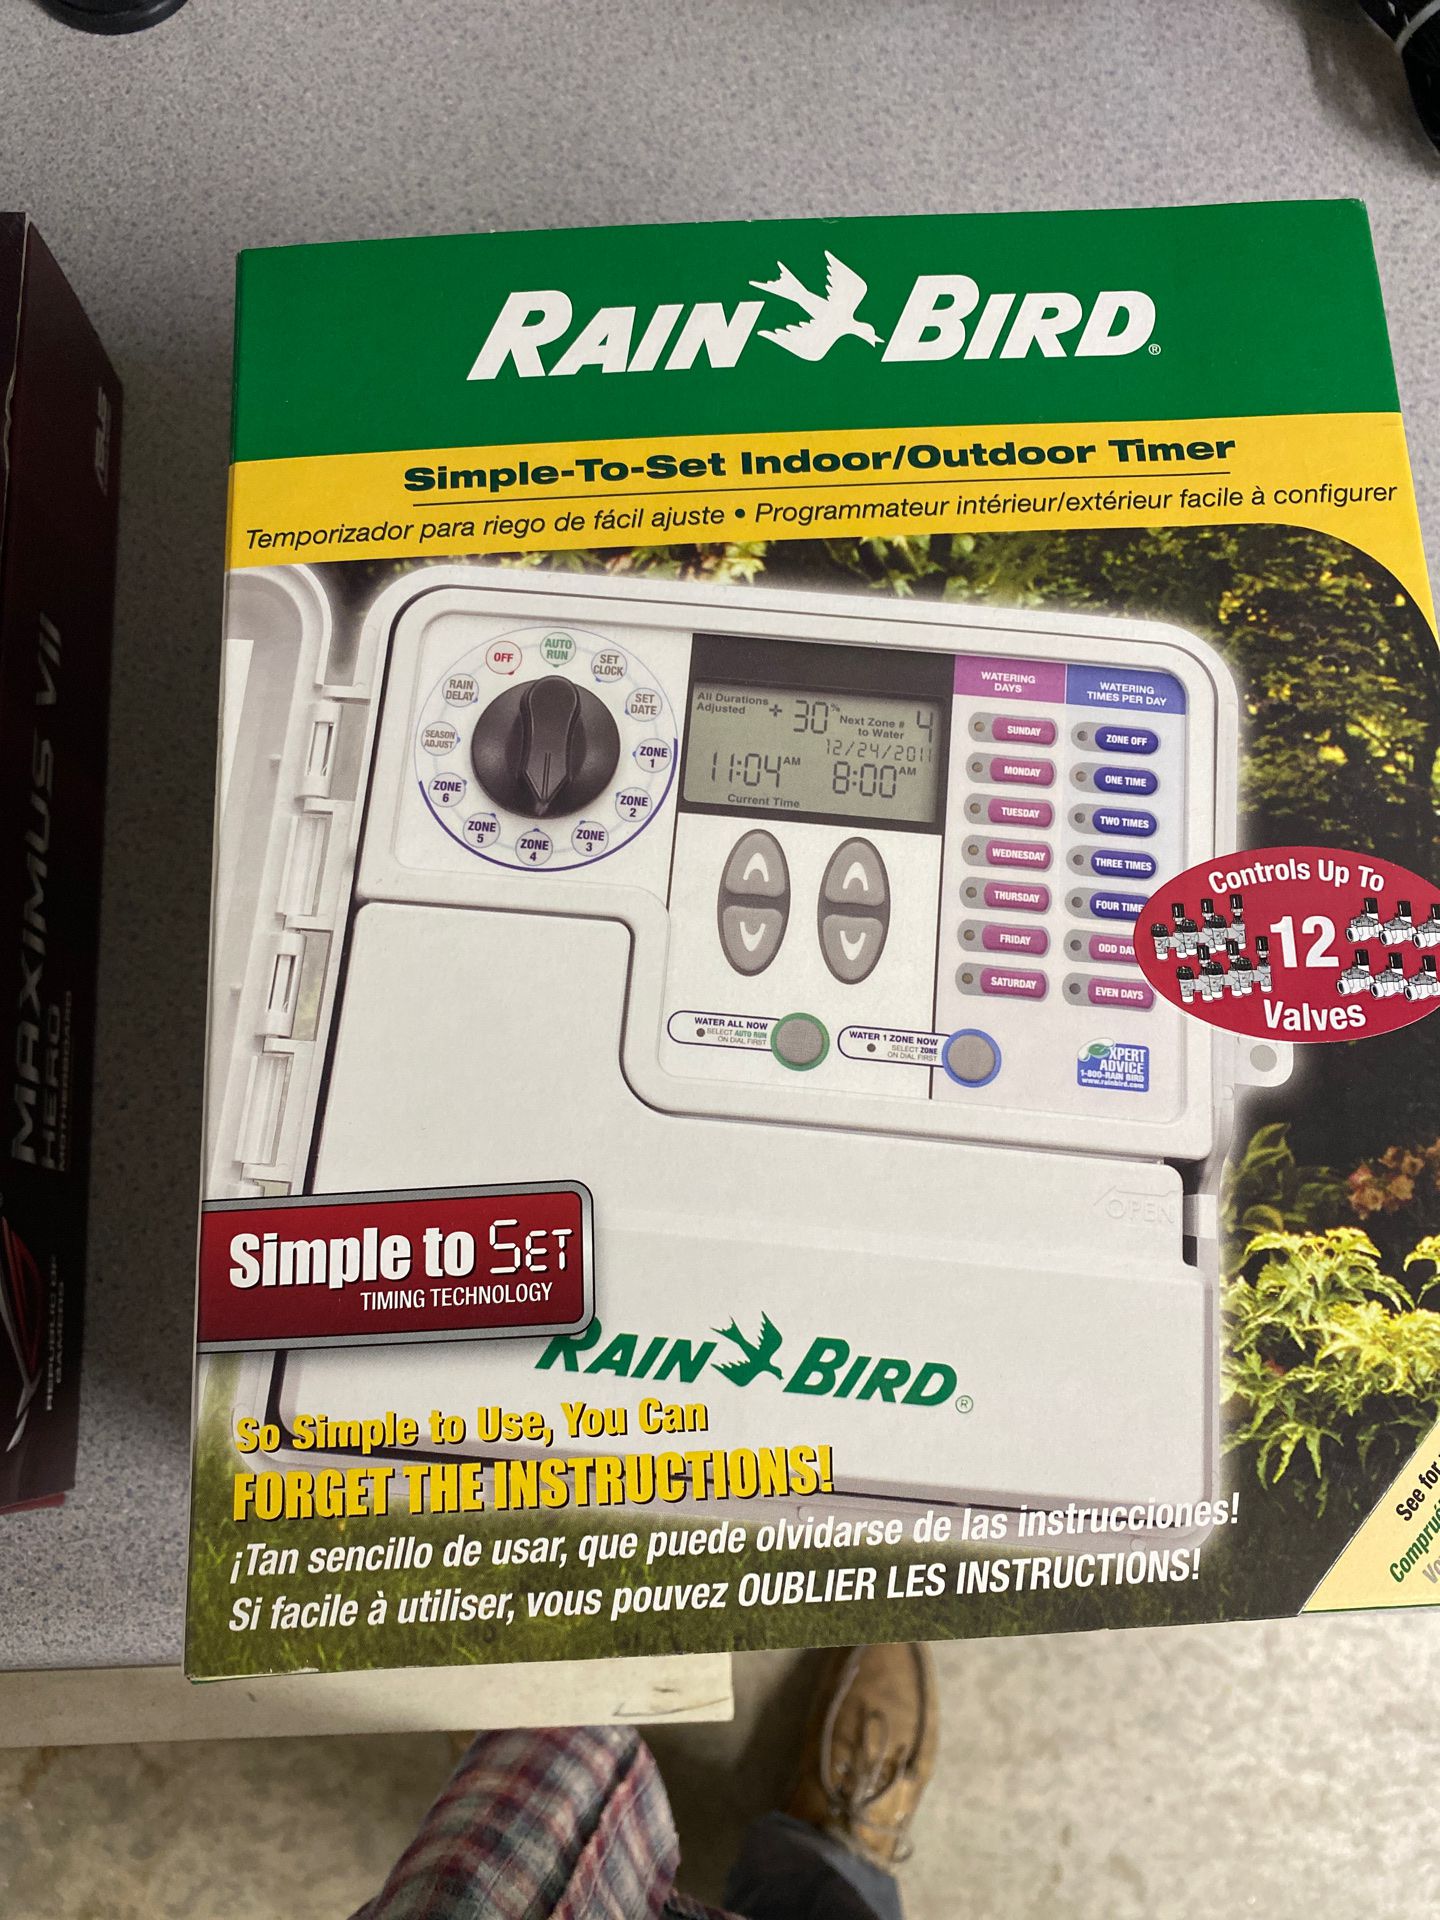 Rain bird SST 1200 sprinkler controller